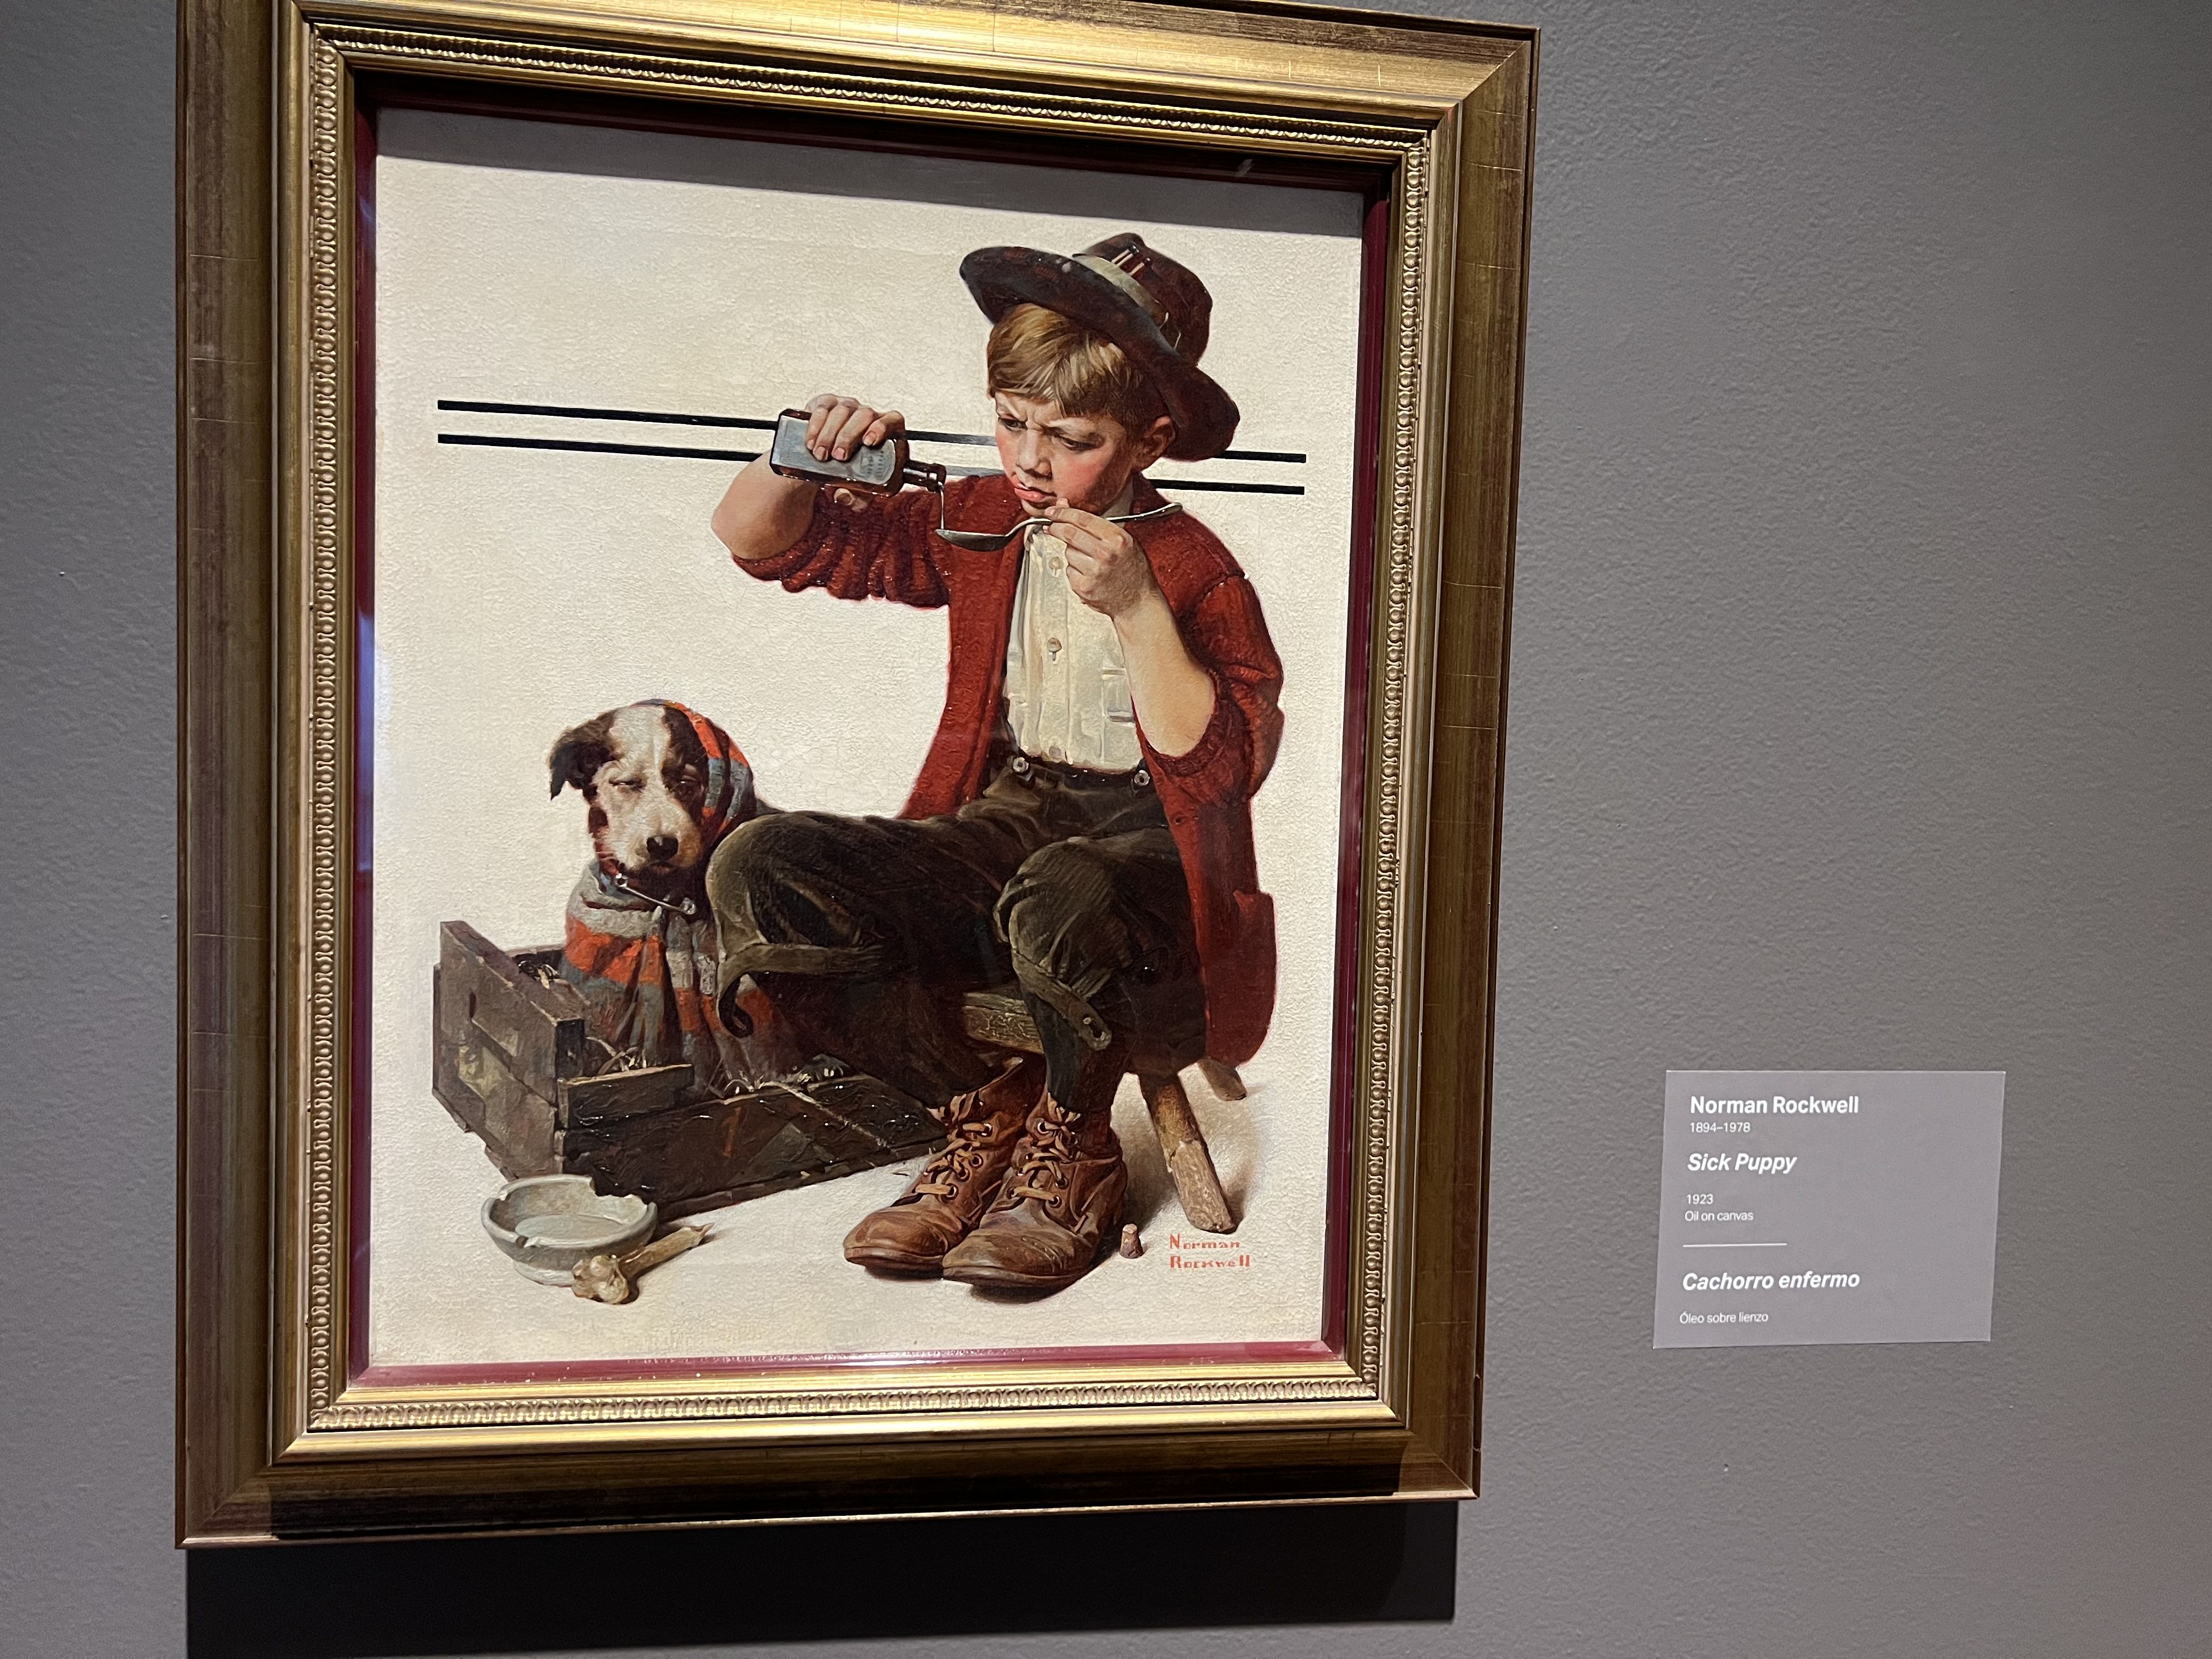 norman rockwell's "sick puppy" with a boy feeding a dog medicine